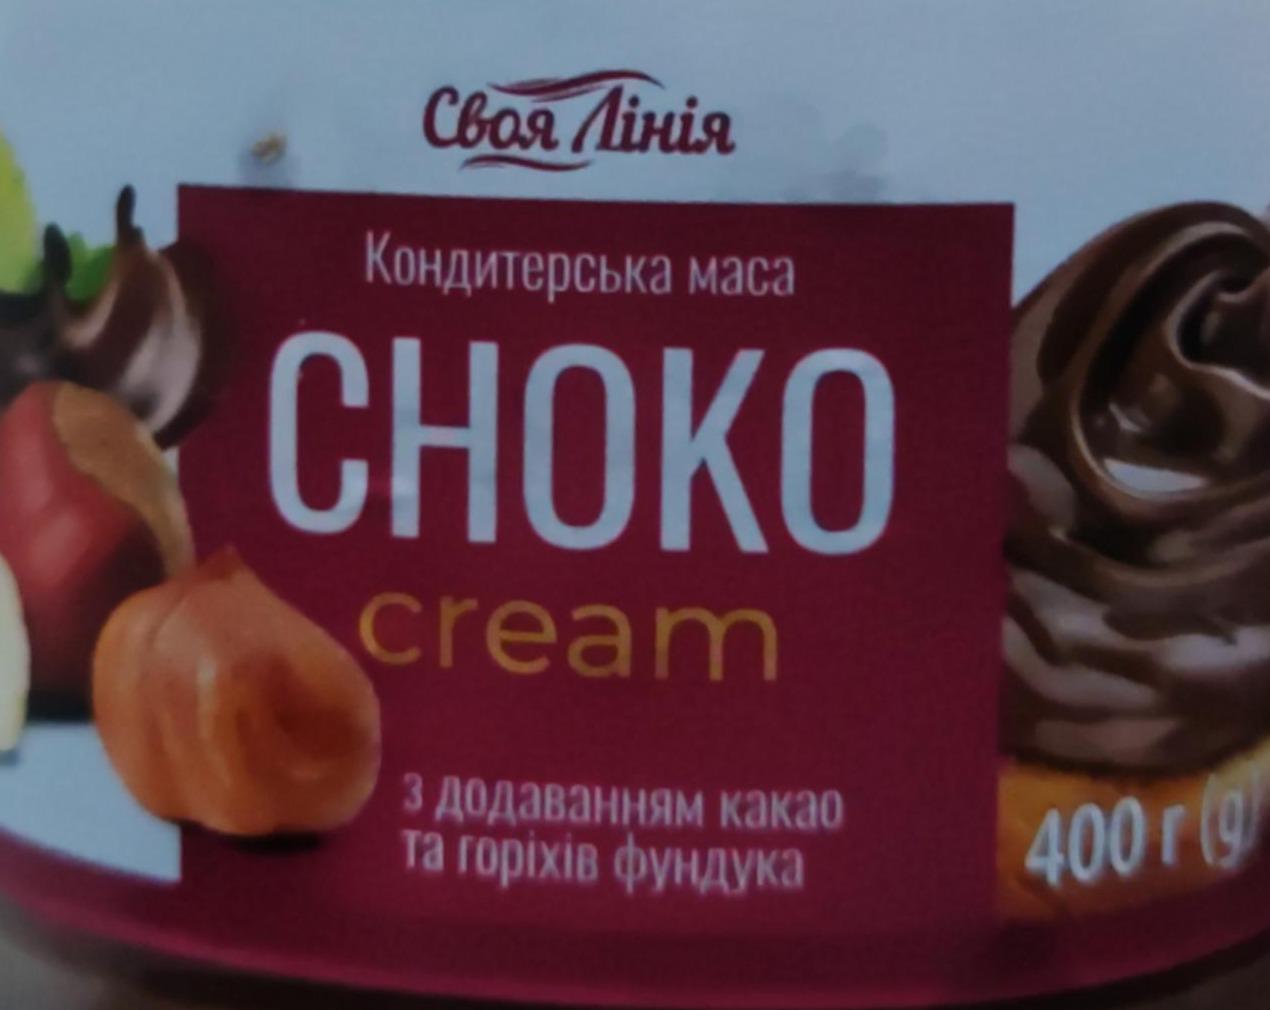 Фото - Кондитерська маса Choko cream з додаванням какао та горіхів фундука Своя Лінія